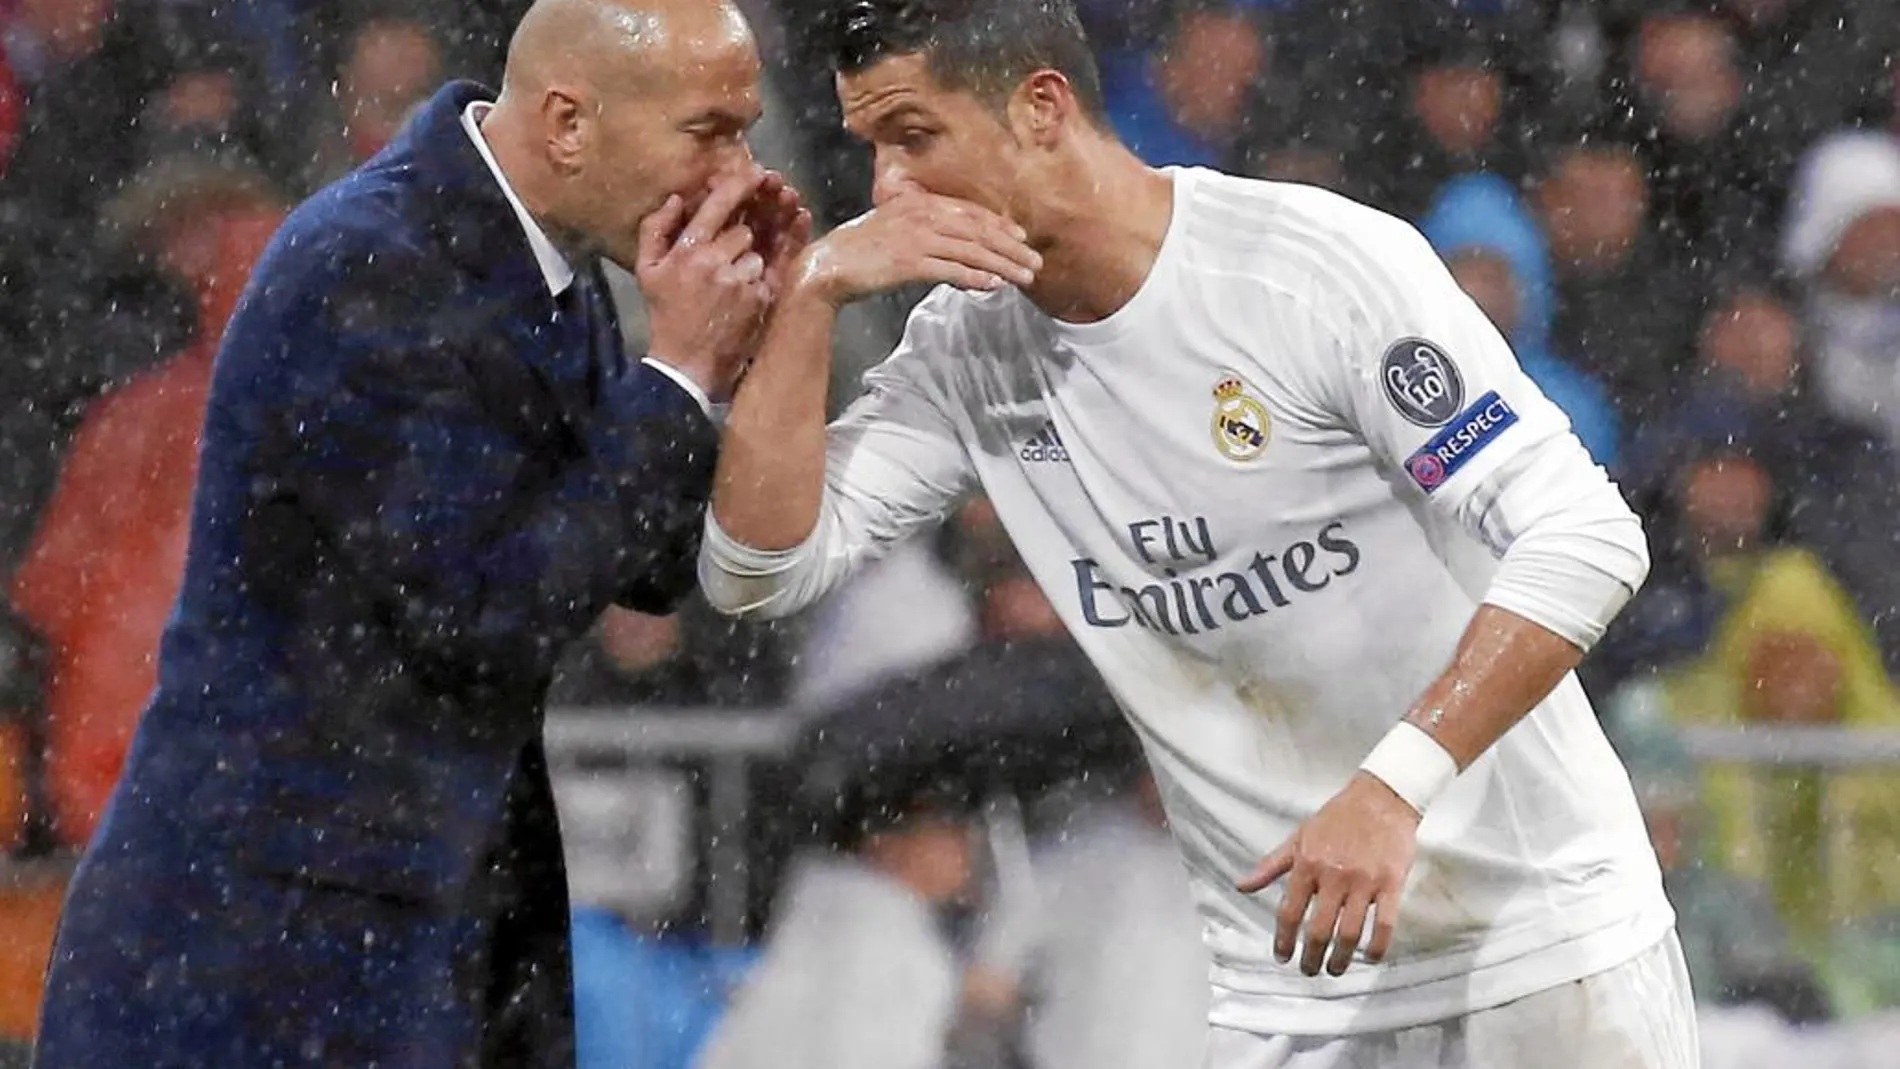 Zidane da órdenes a Ronaldo durante un encuentro